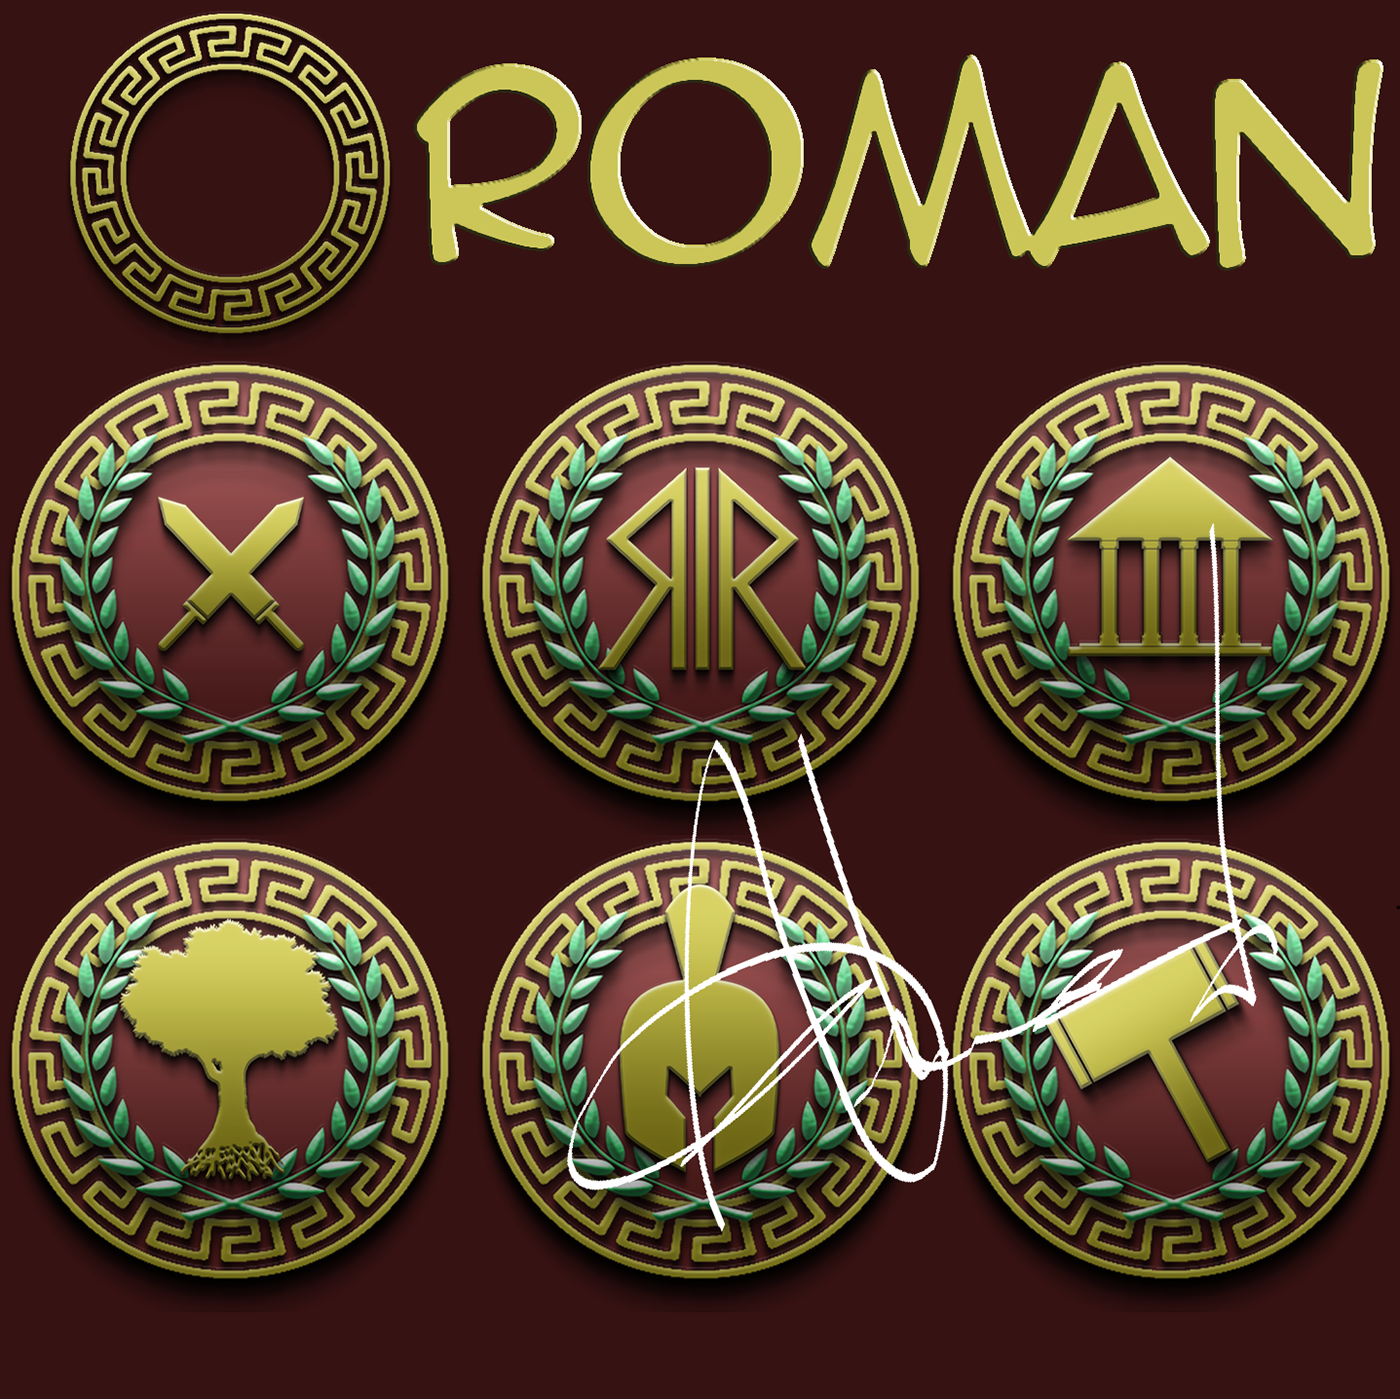 logos roman Roman Empire Rome Rome empire